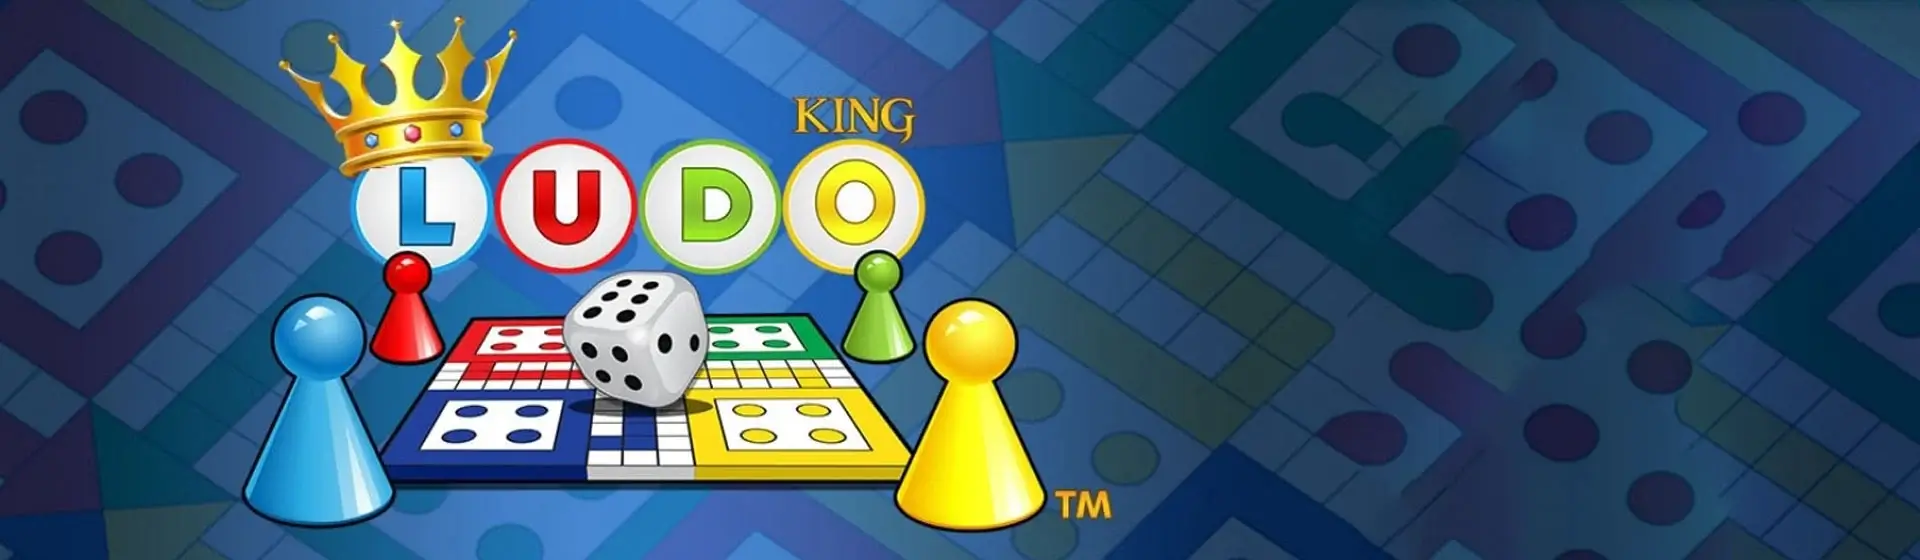 Como baixar e jogar Ludo King, versão grátis do jogo de tabuleiro Ludo